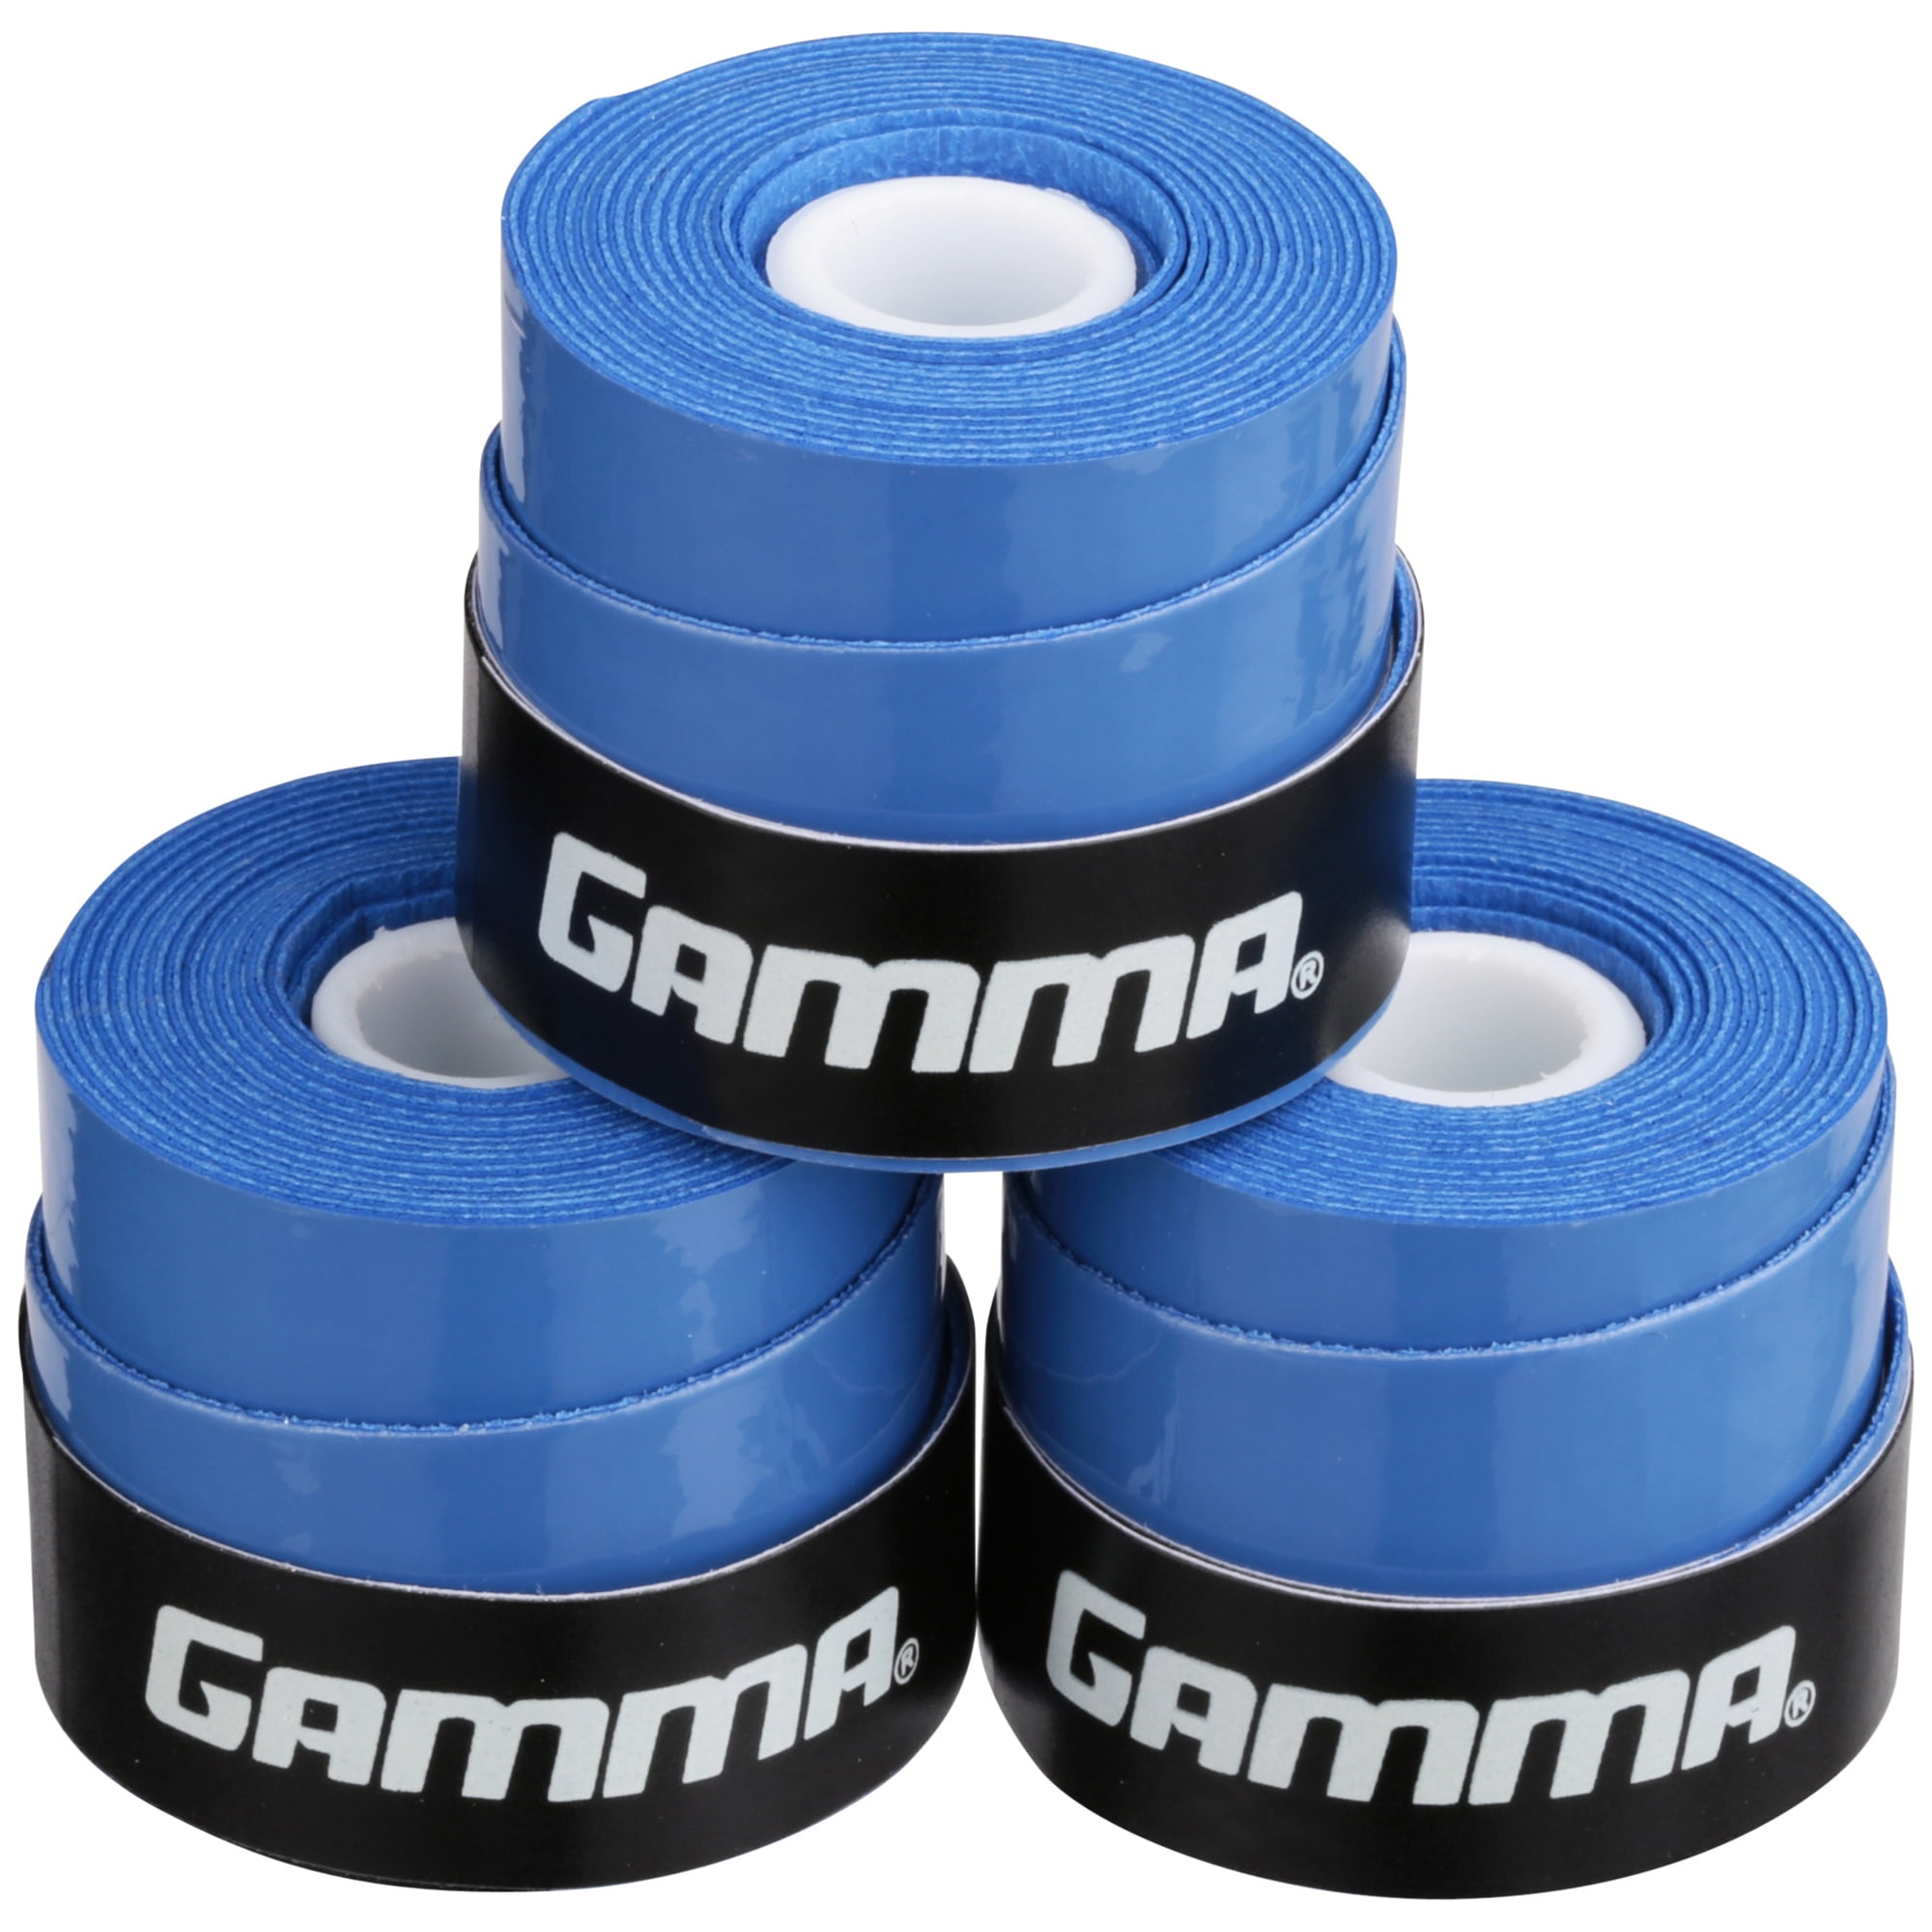 Gamma Hi-Tech Gel Contour Replacement Grip